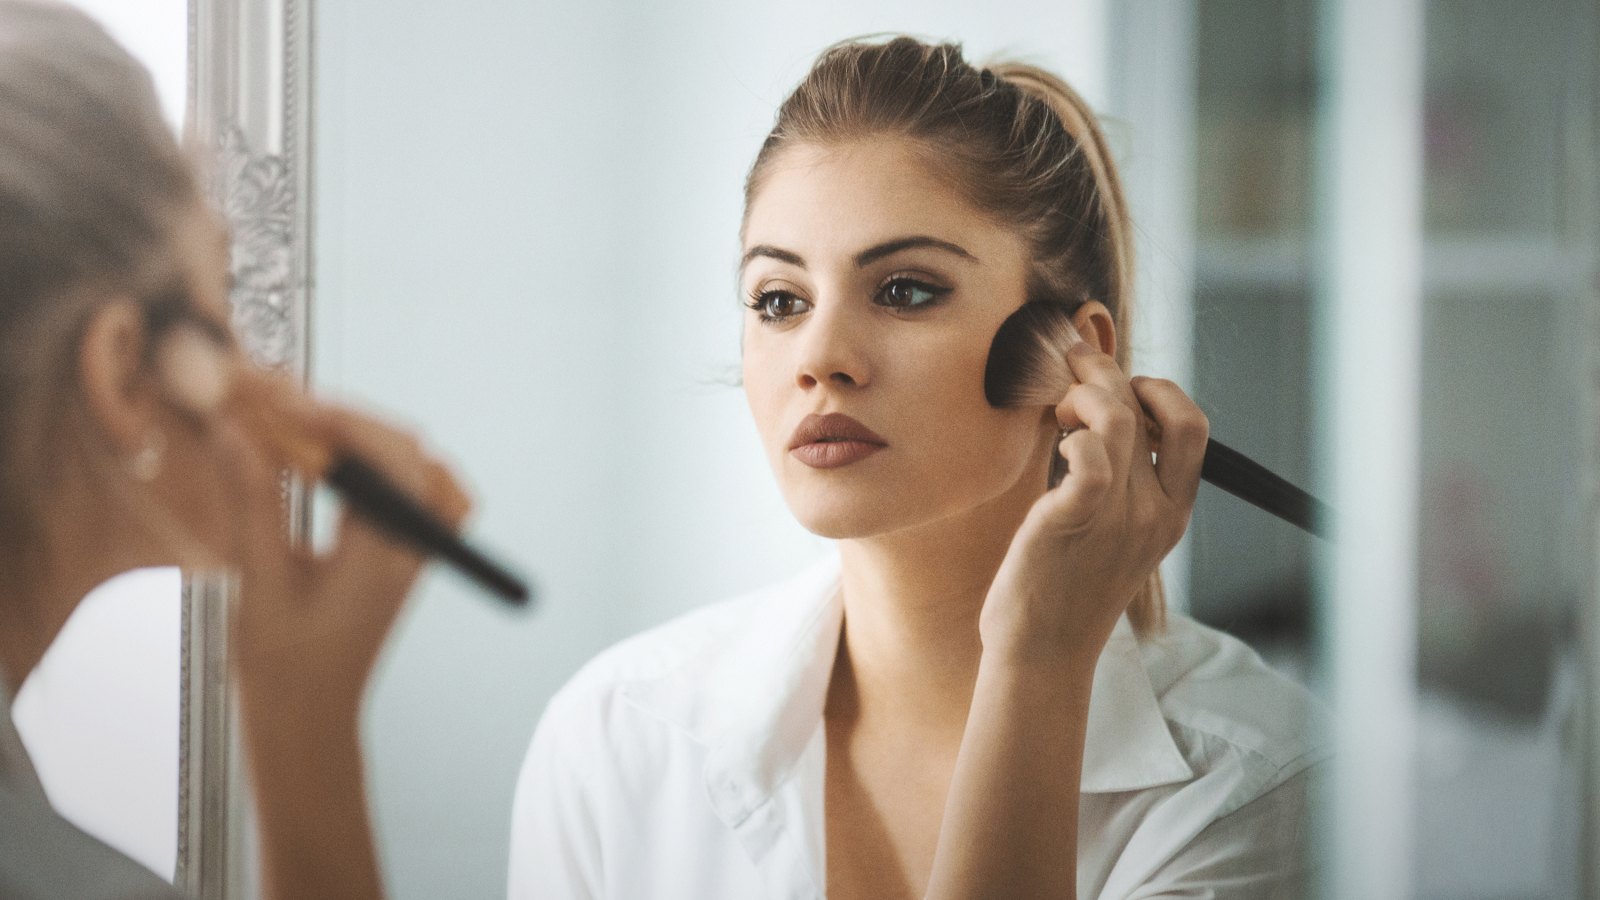 woman putting on makeup